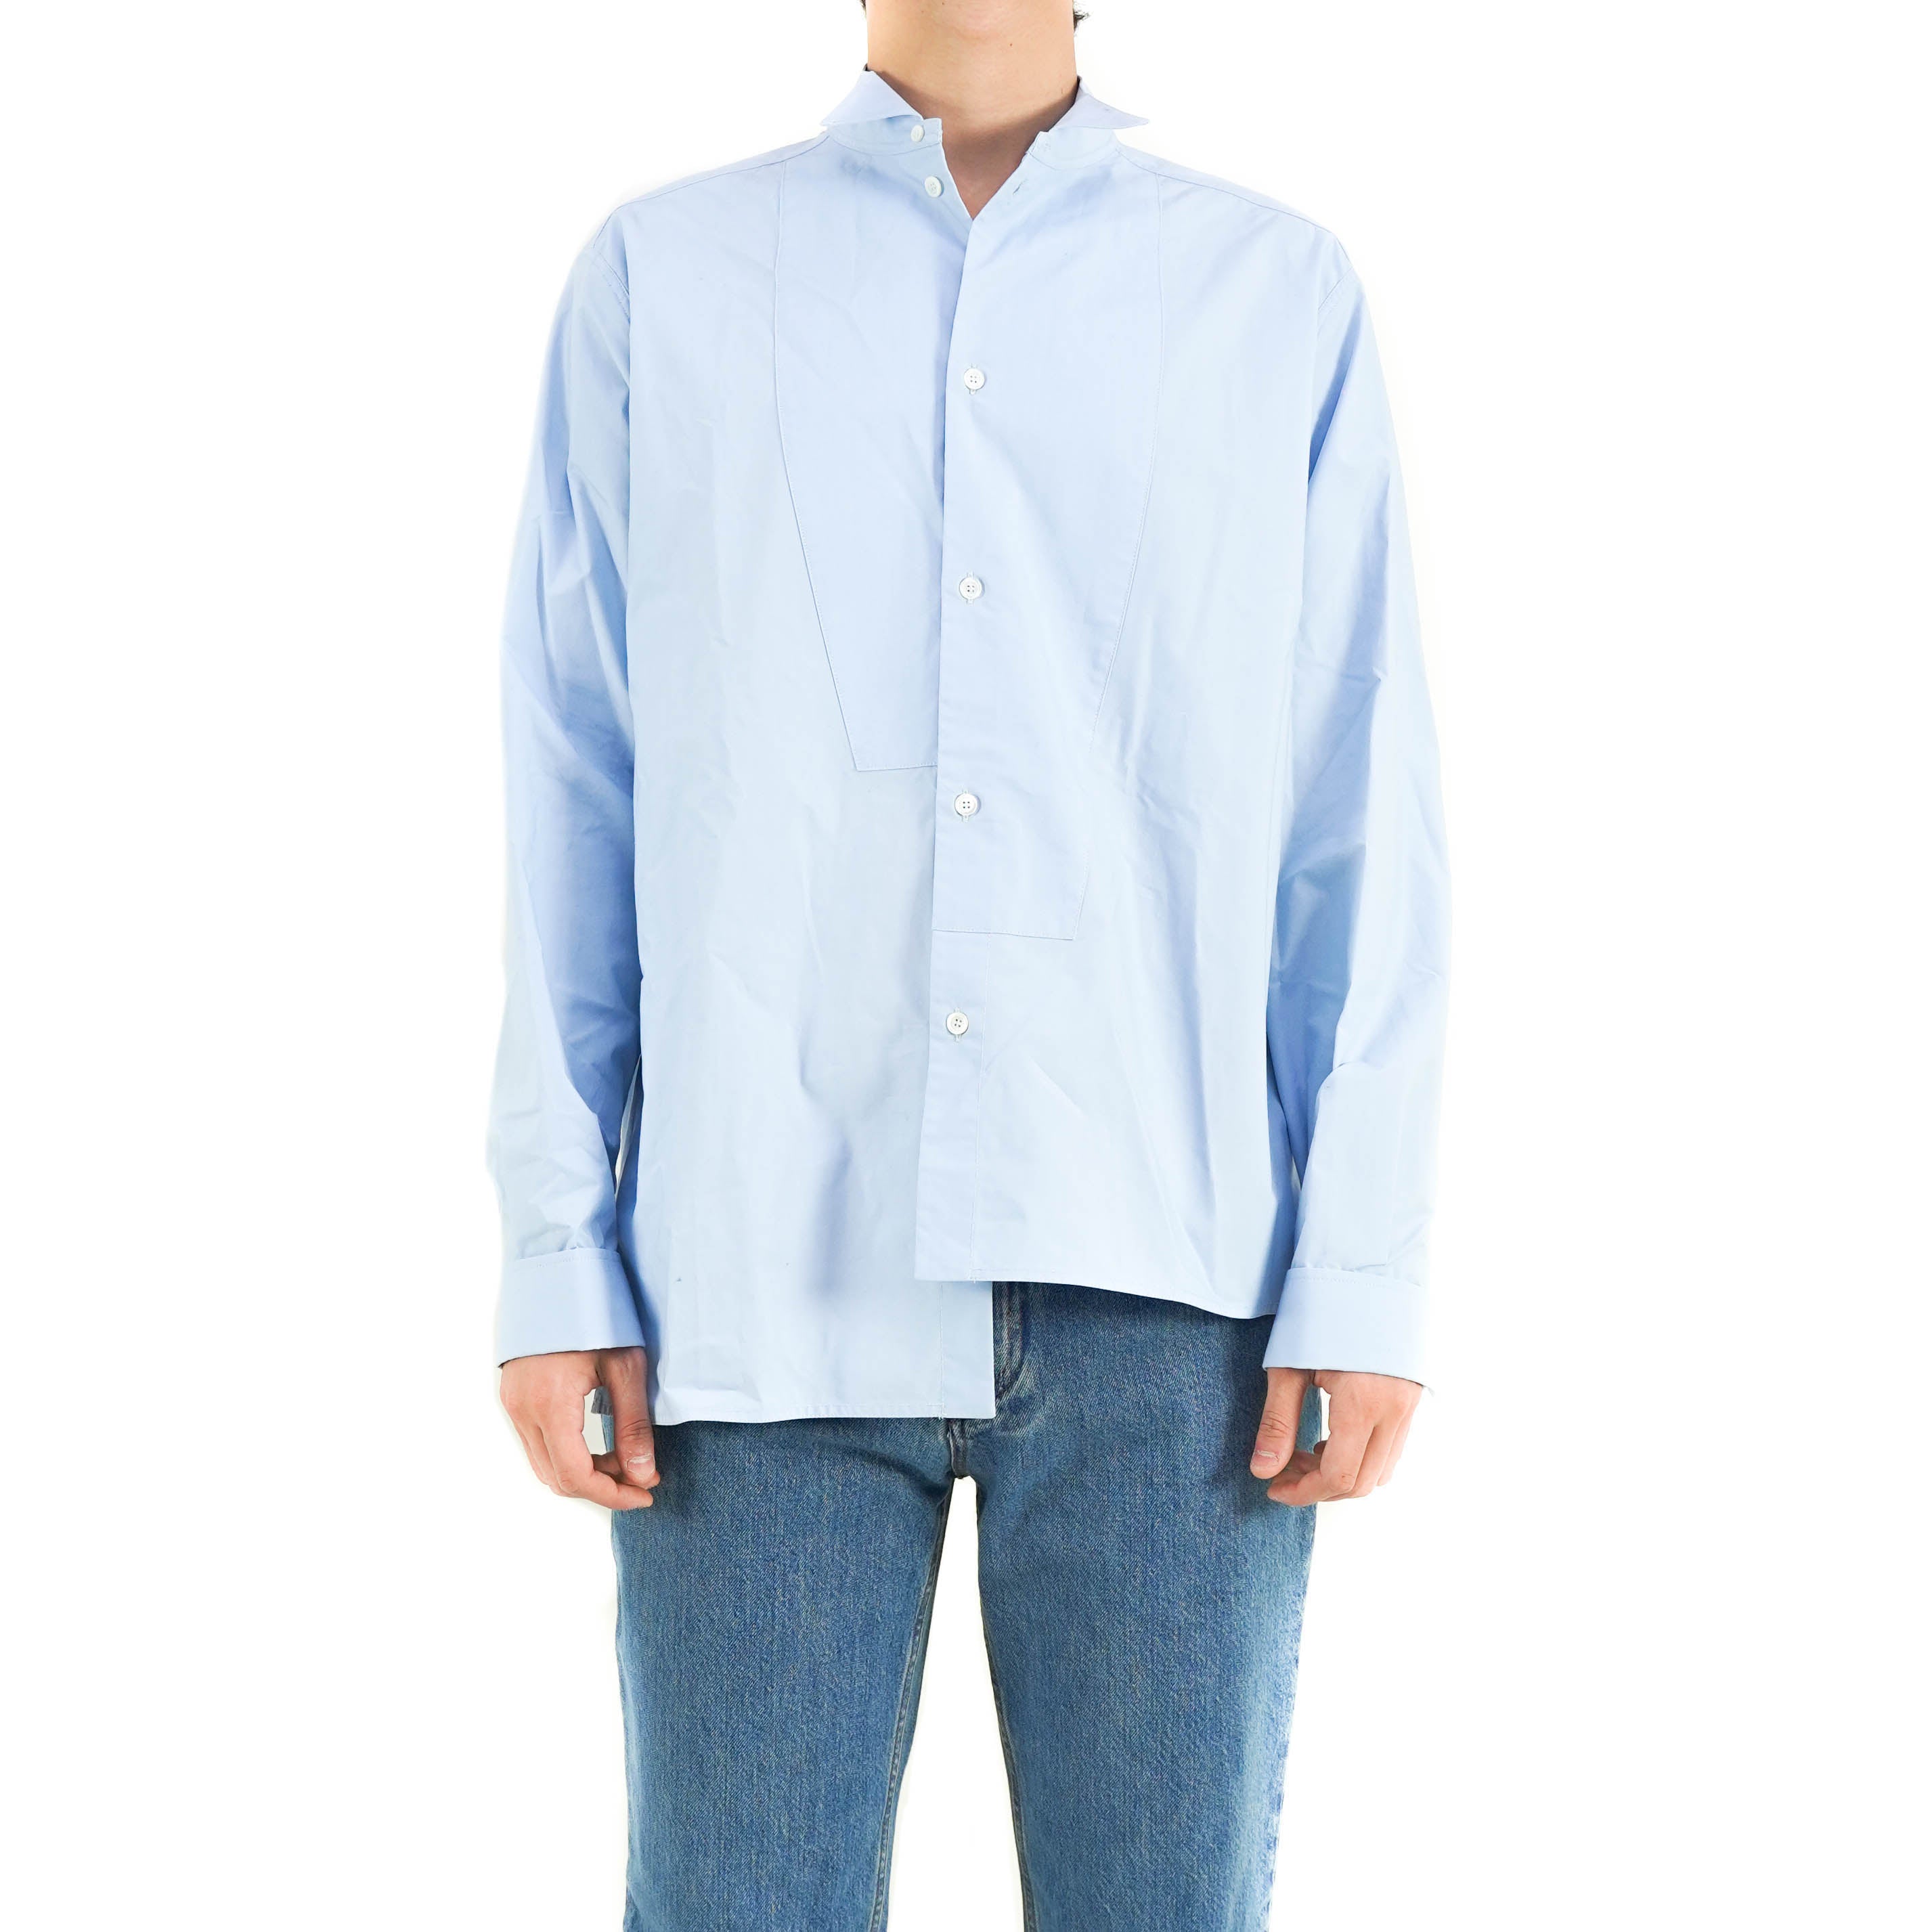 Light Blue Asymmetrical Shirt